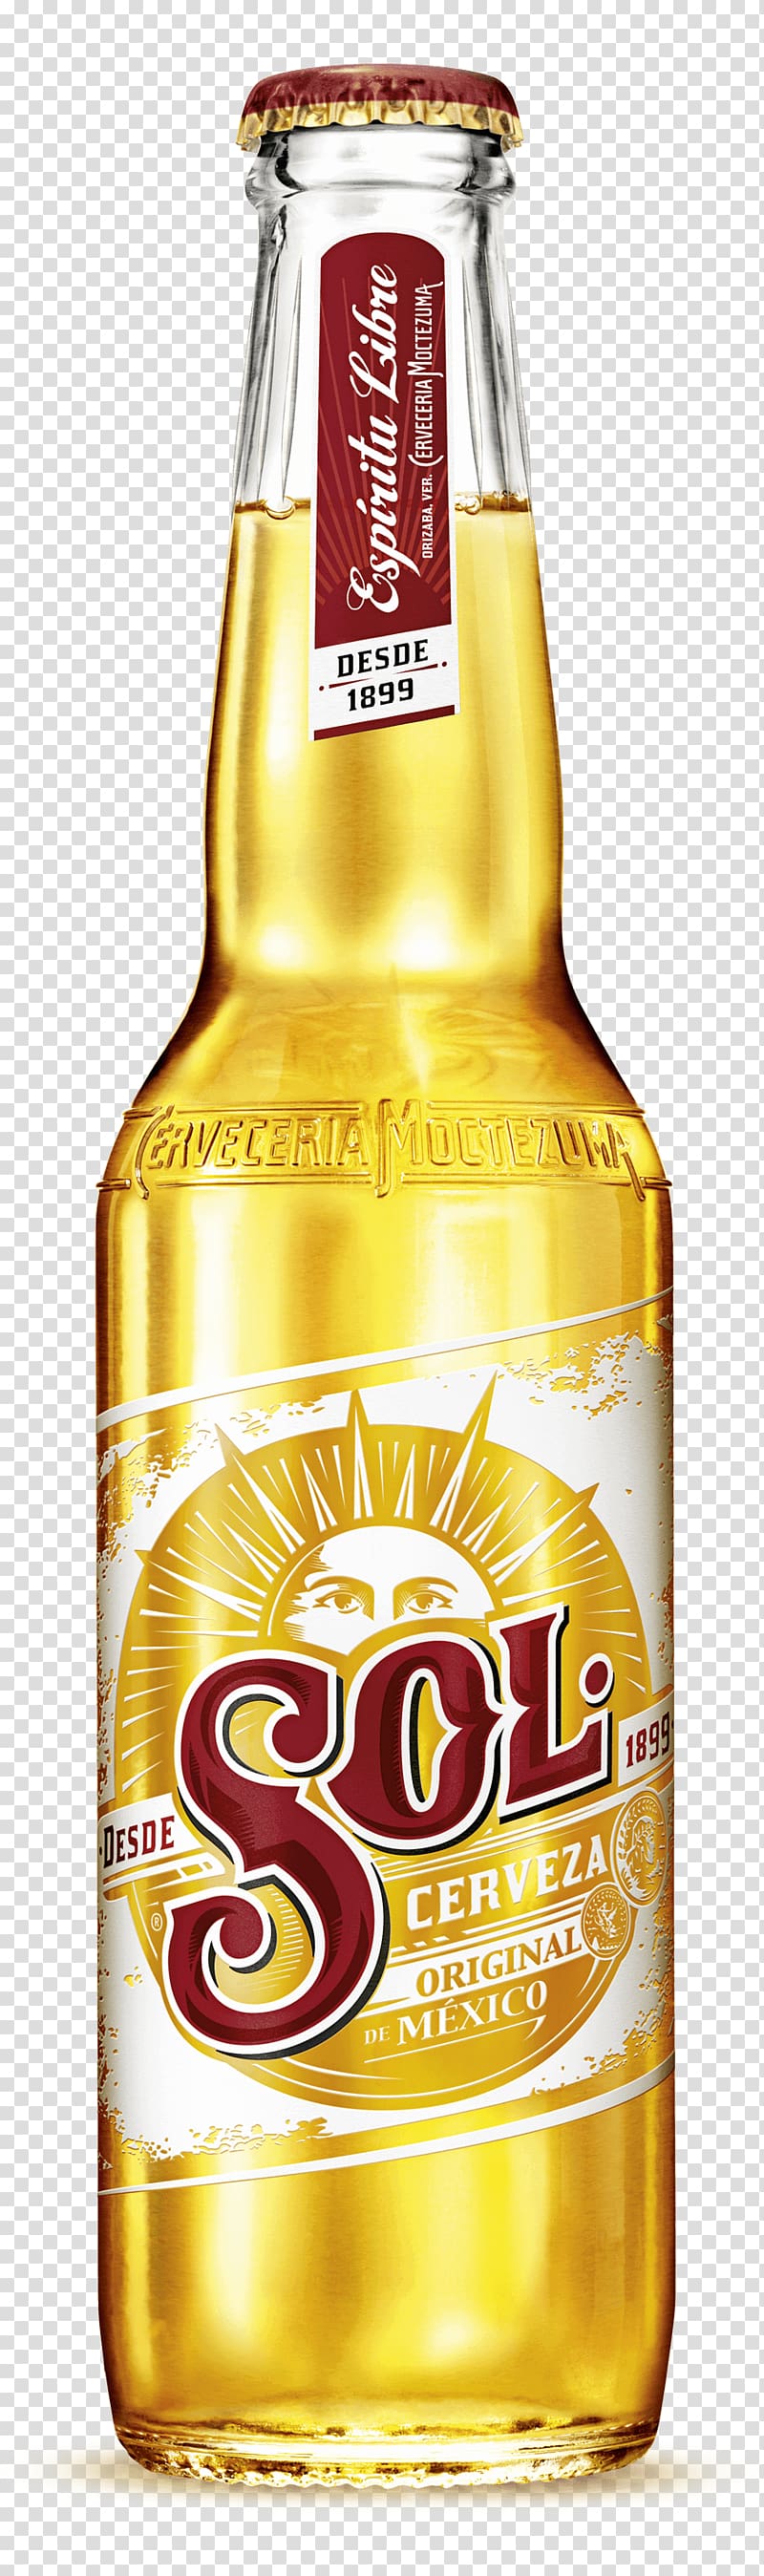 Beer Lager Cuauhtémoc Moctezuma Brewery Pilsner Distilled beverage, beer transparent background PNG clipart